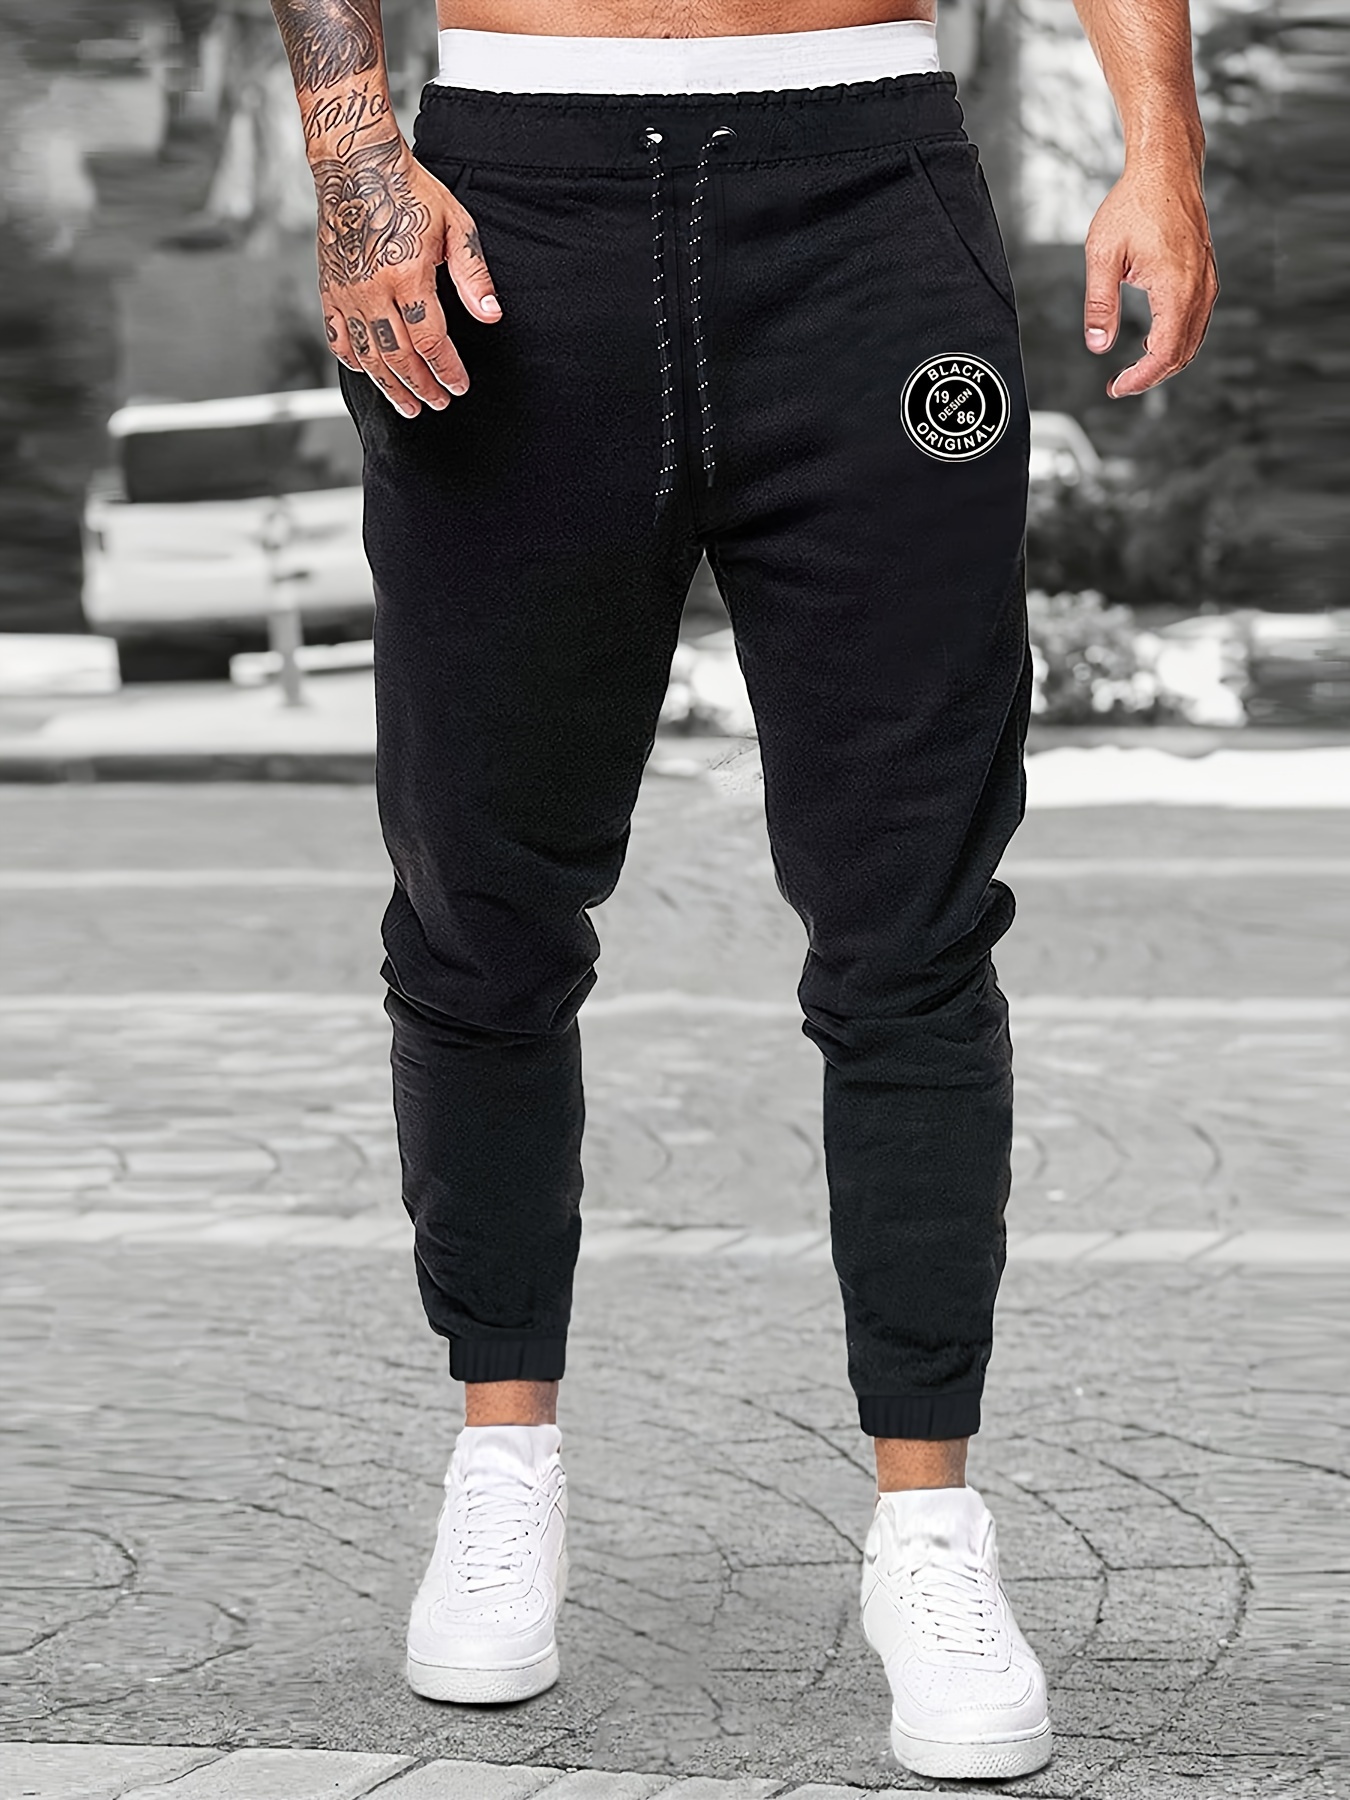 Brokig - Pantalones deportivos con cremallera para hombre, pantalones  casuales para entrenamiento y gimnasia, cómodos pantalones de chándal  ajustados